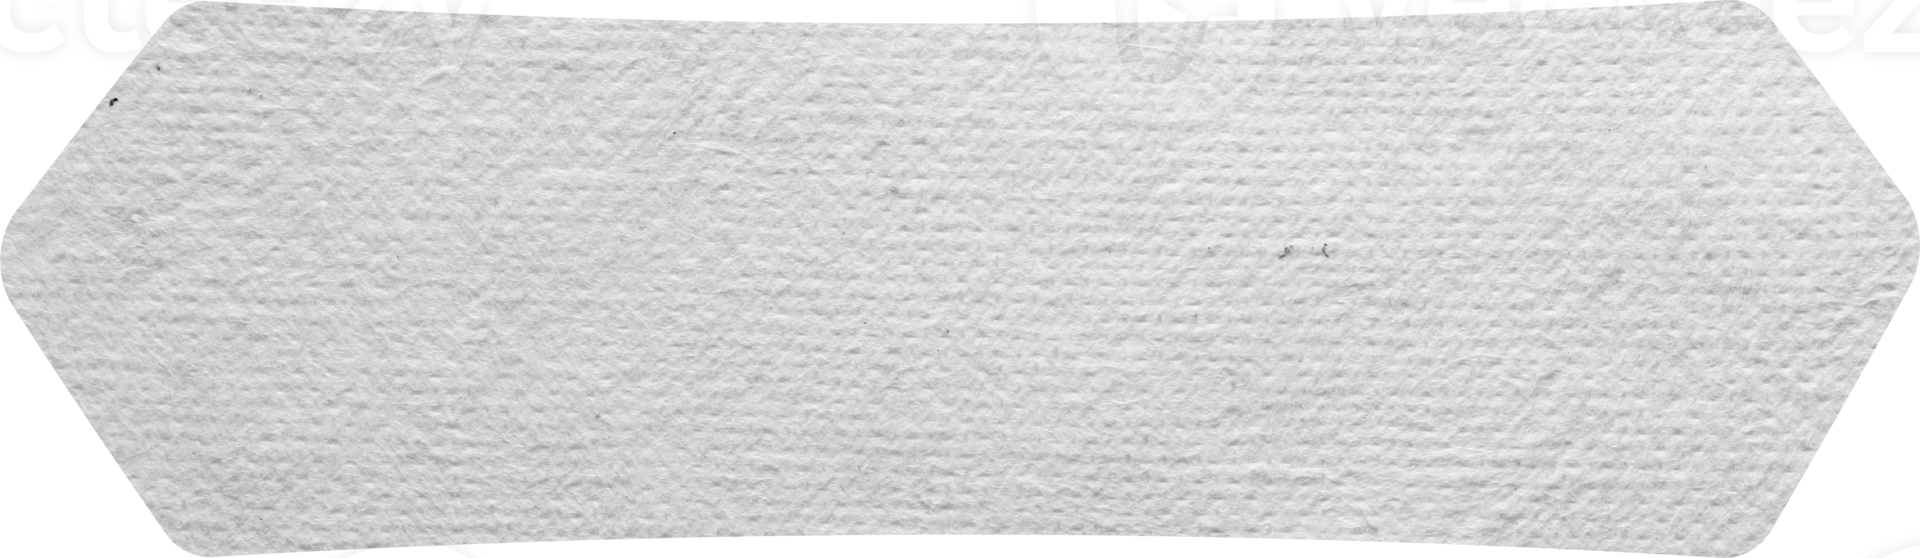 etiquetas de etiquetas de papel fondo de textura de papel de notas, trazados de recorte aislados para el trabajo de diseño espacio libre vacío png